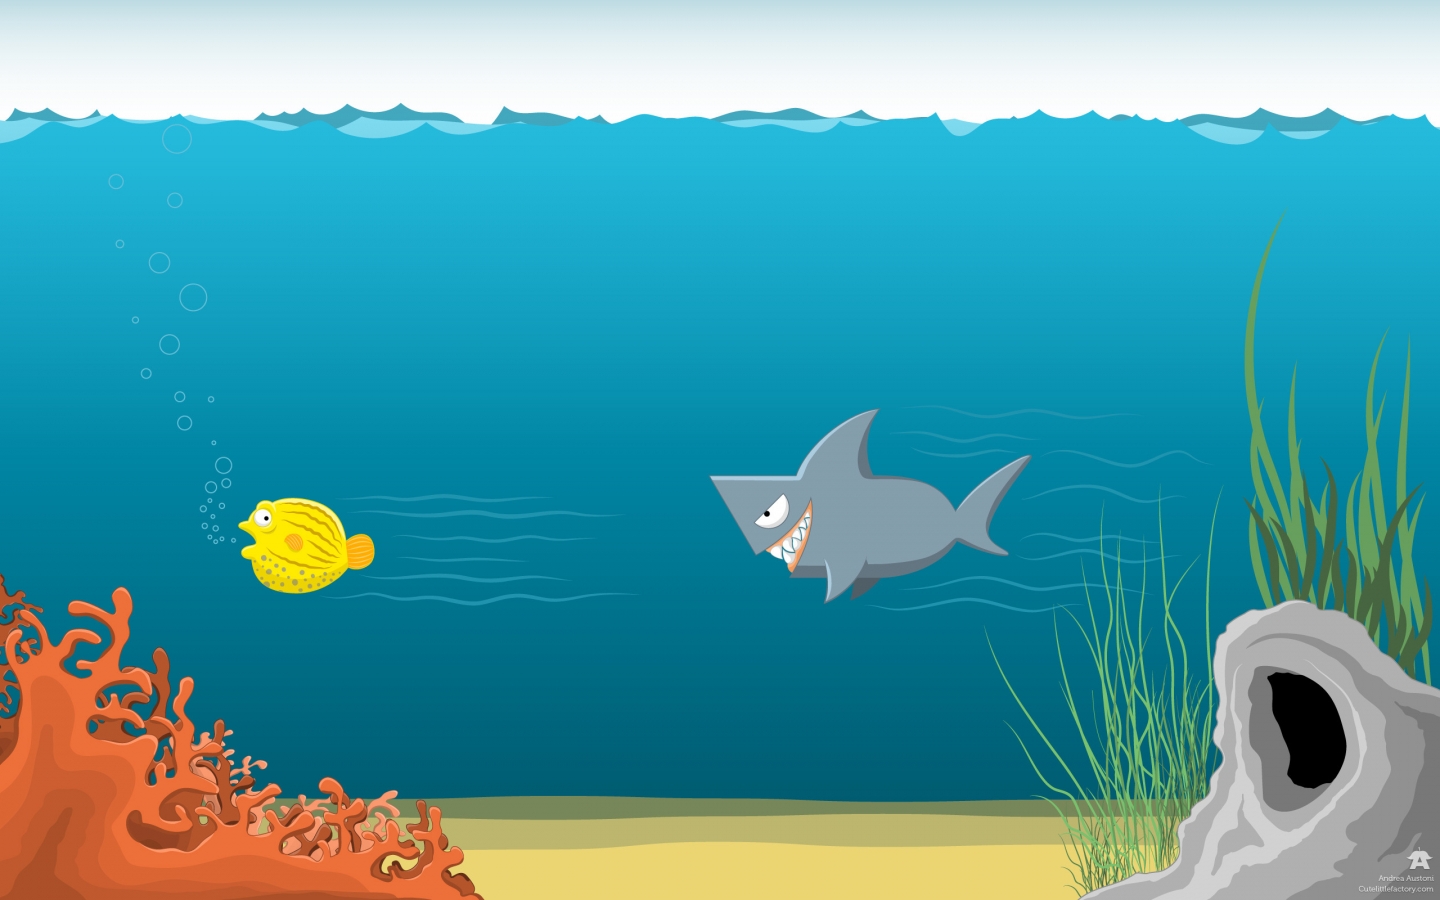 Shark blowfish for 1440 x 900 widescreen resolution